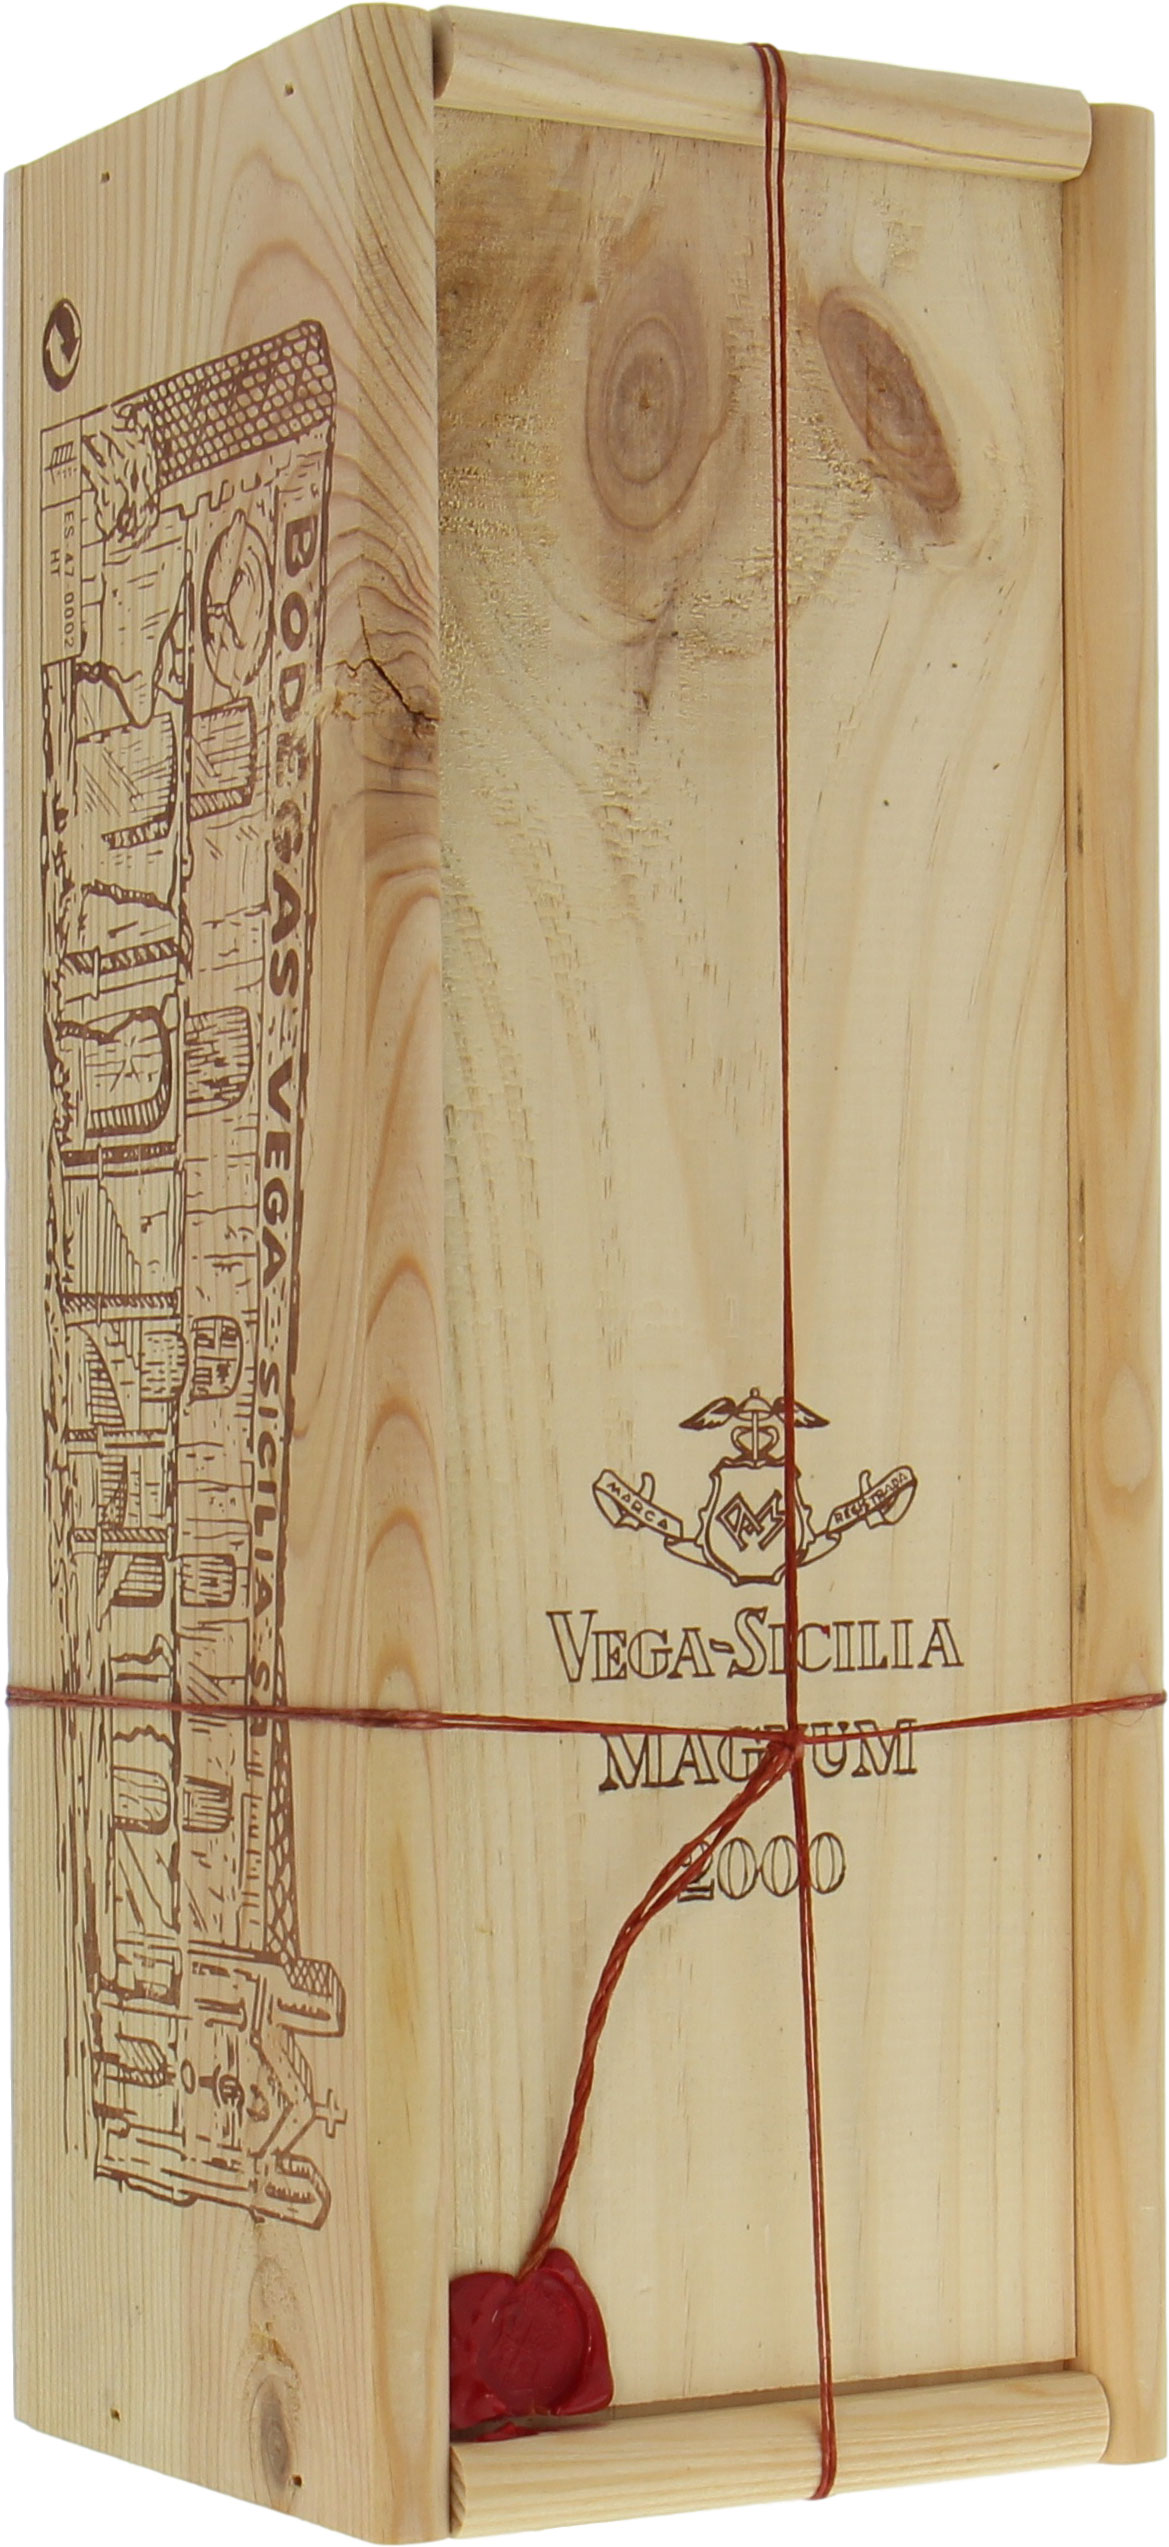 Vega Sicilia - Unico 2000 From Original Wooden Case